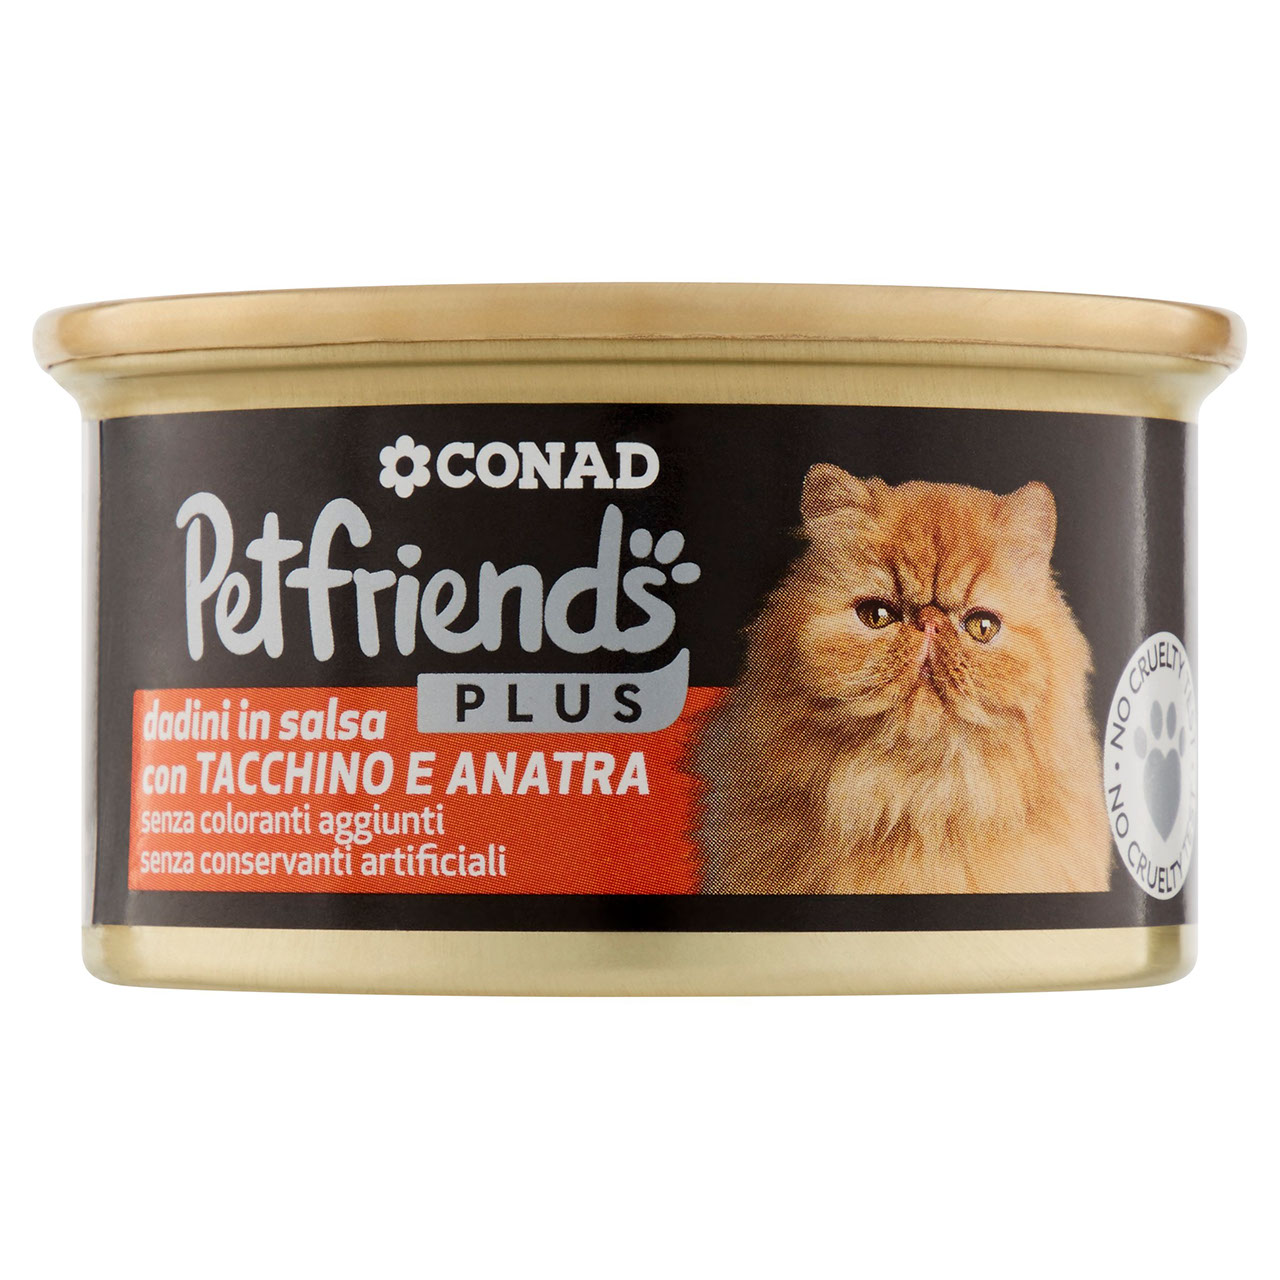 Petfriends Plus Dadini Tacchino e Anatra 85g Conad